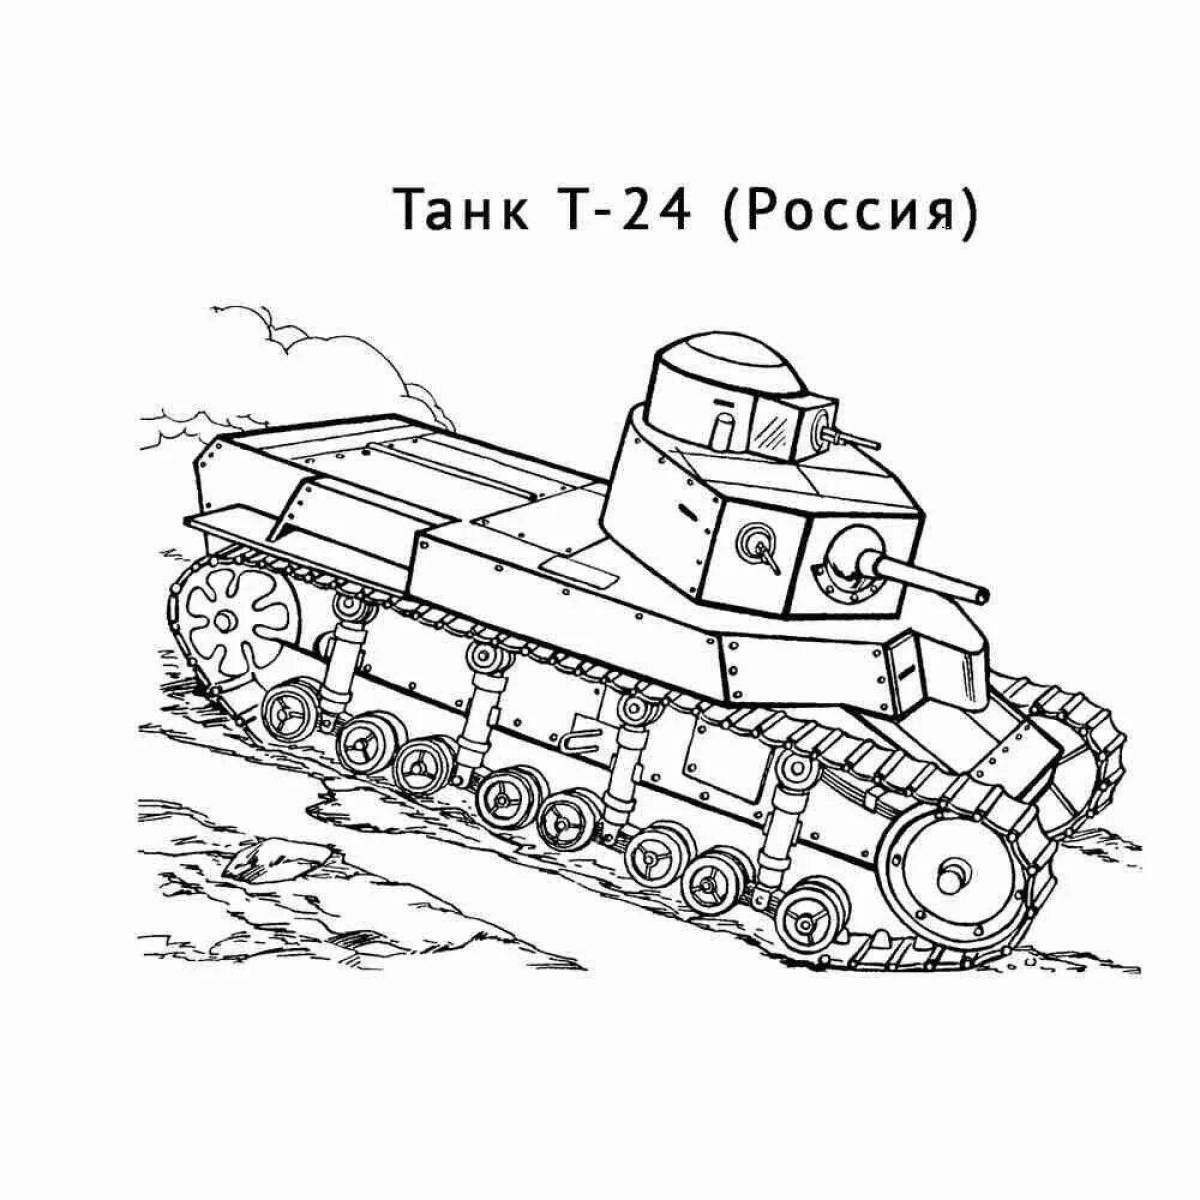 Great coloring tank kv 44m